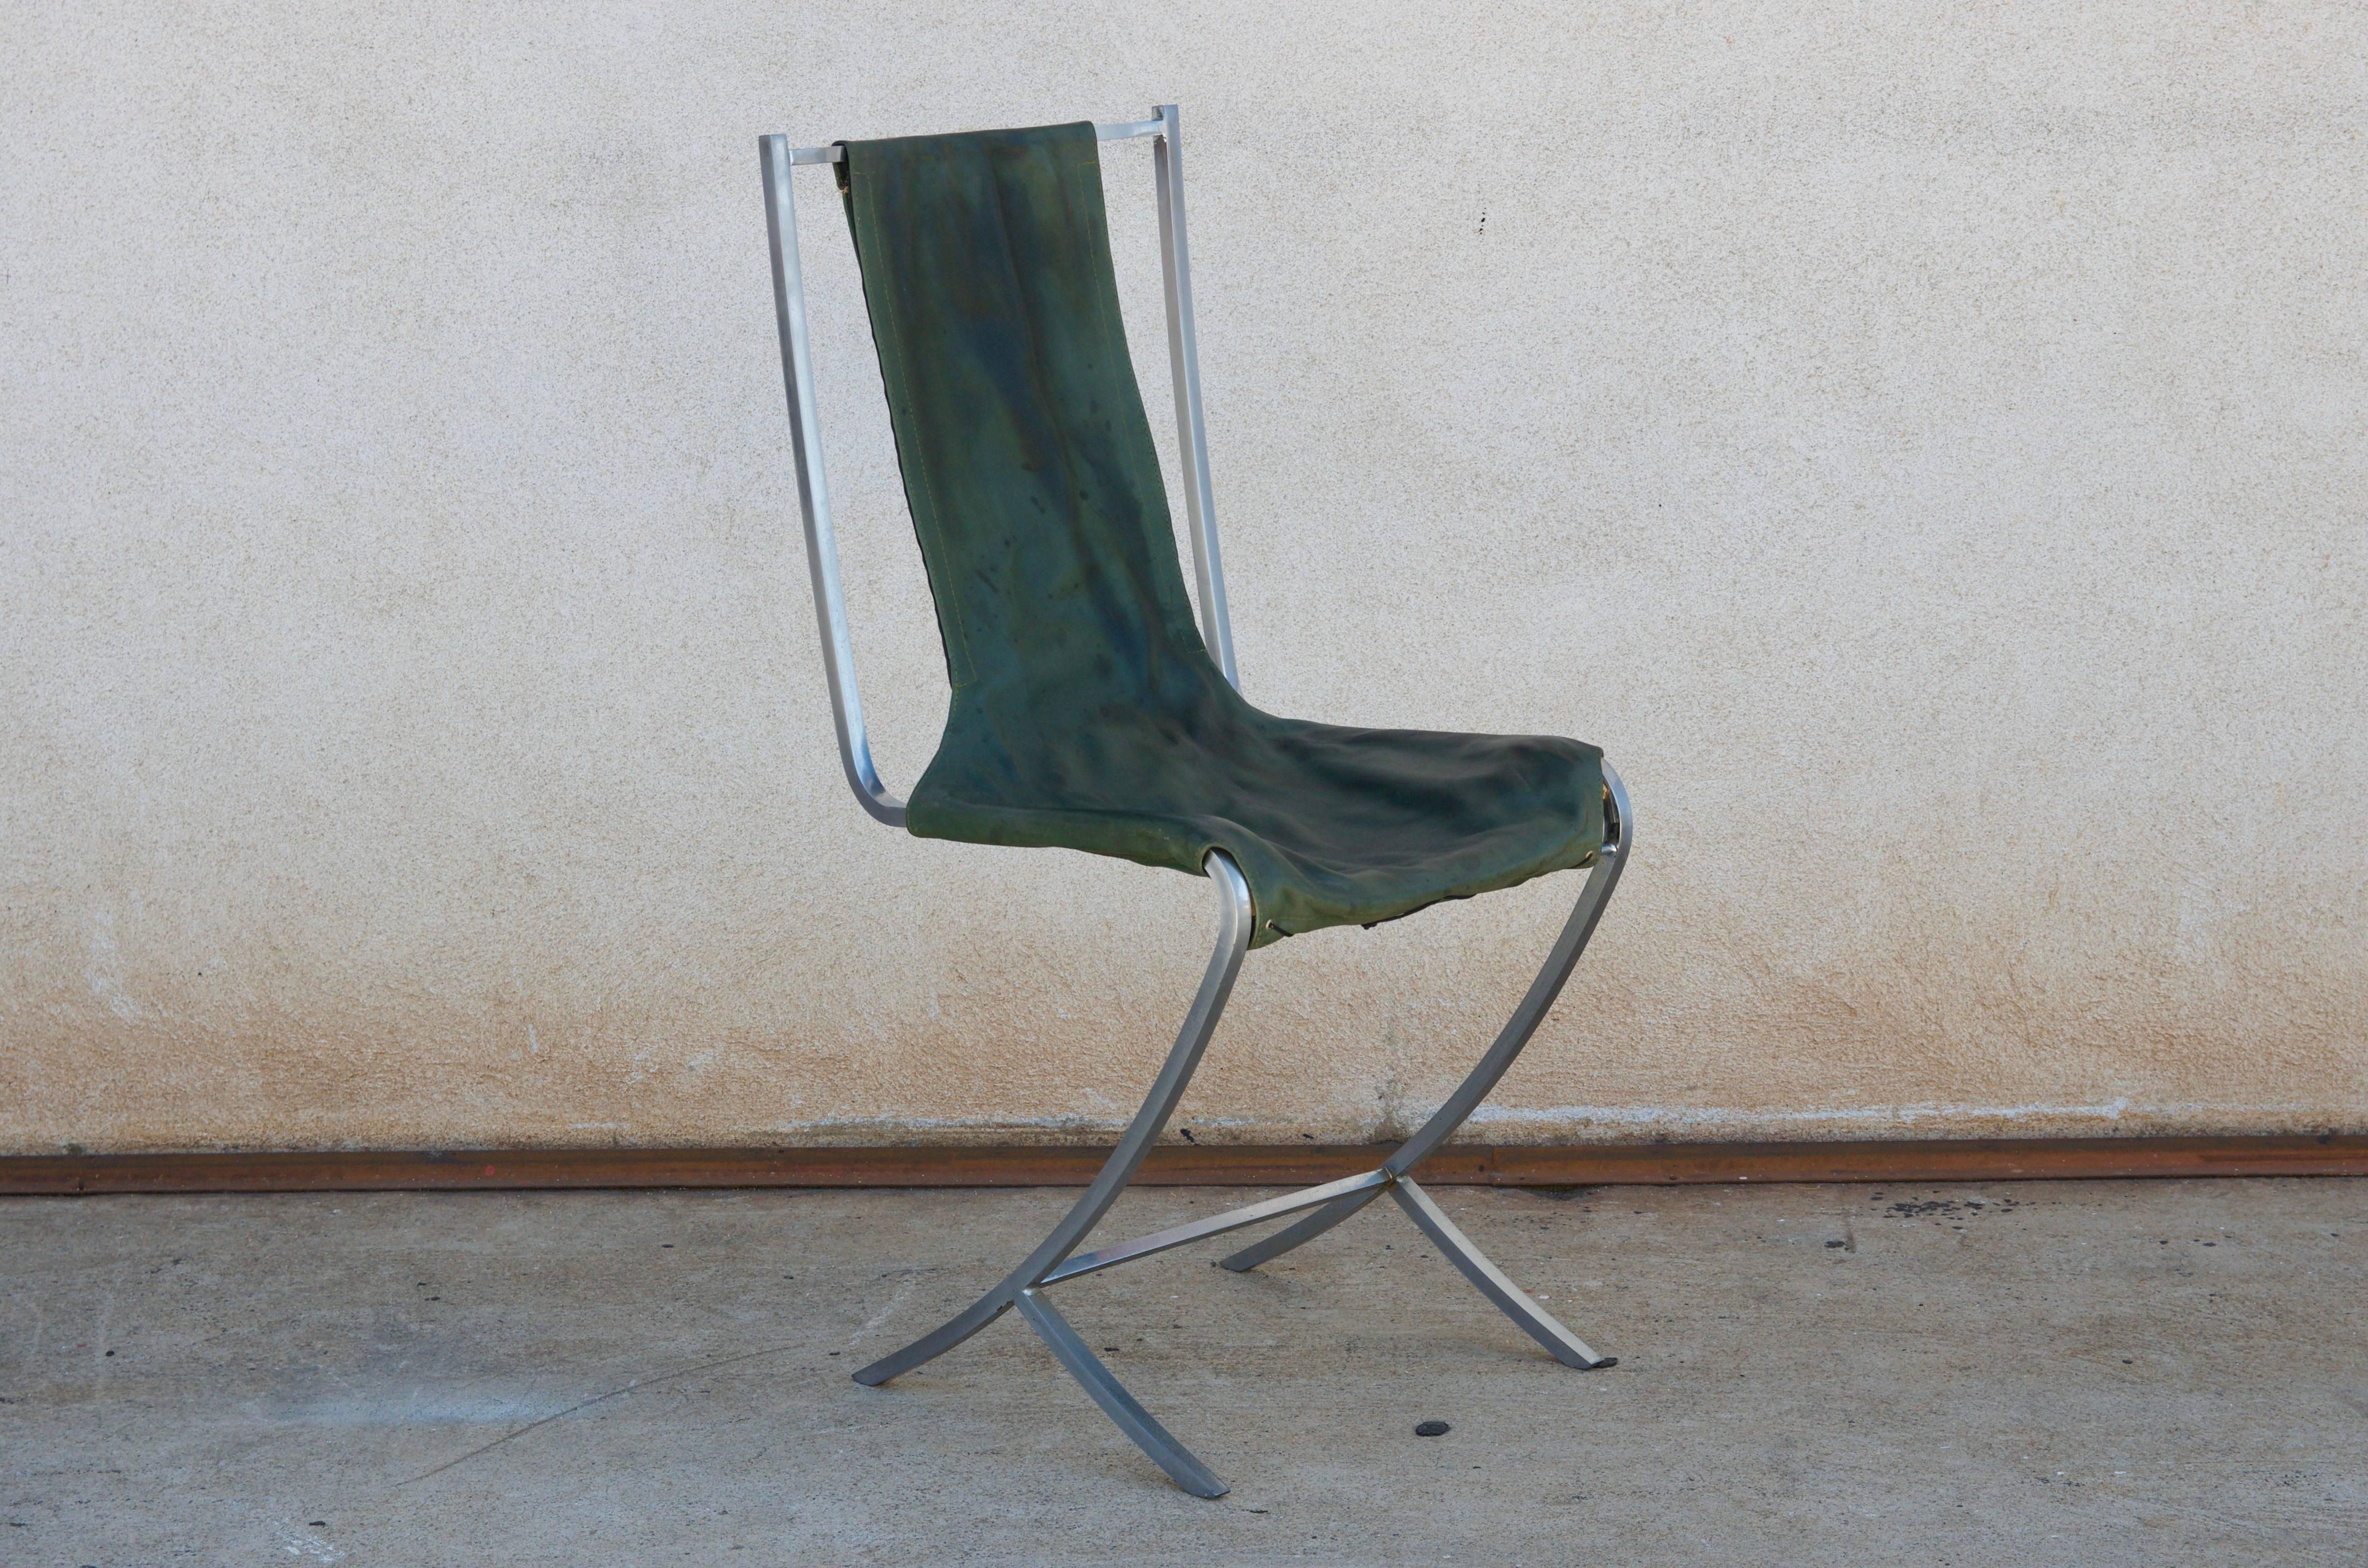 Seltener Satz von fünf Stühlen aus Edelstahl (acier inoxydable) von Maison Jansen. Hergestellt von Usinox. Original grüne Ledersitz- und Rückenbezüge, die durch C.O.M. ersetzt werden müssen (6 Meter).

Hervorragend geeignet als Fünfer-Set für